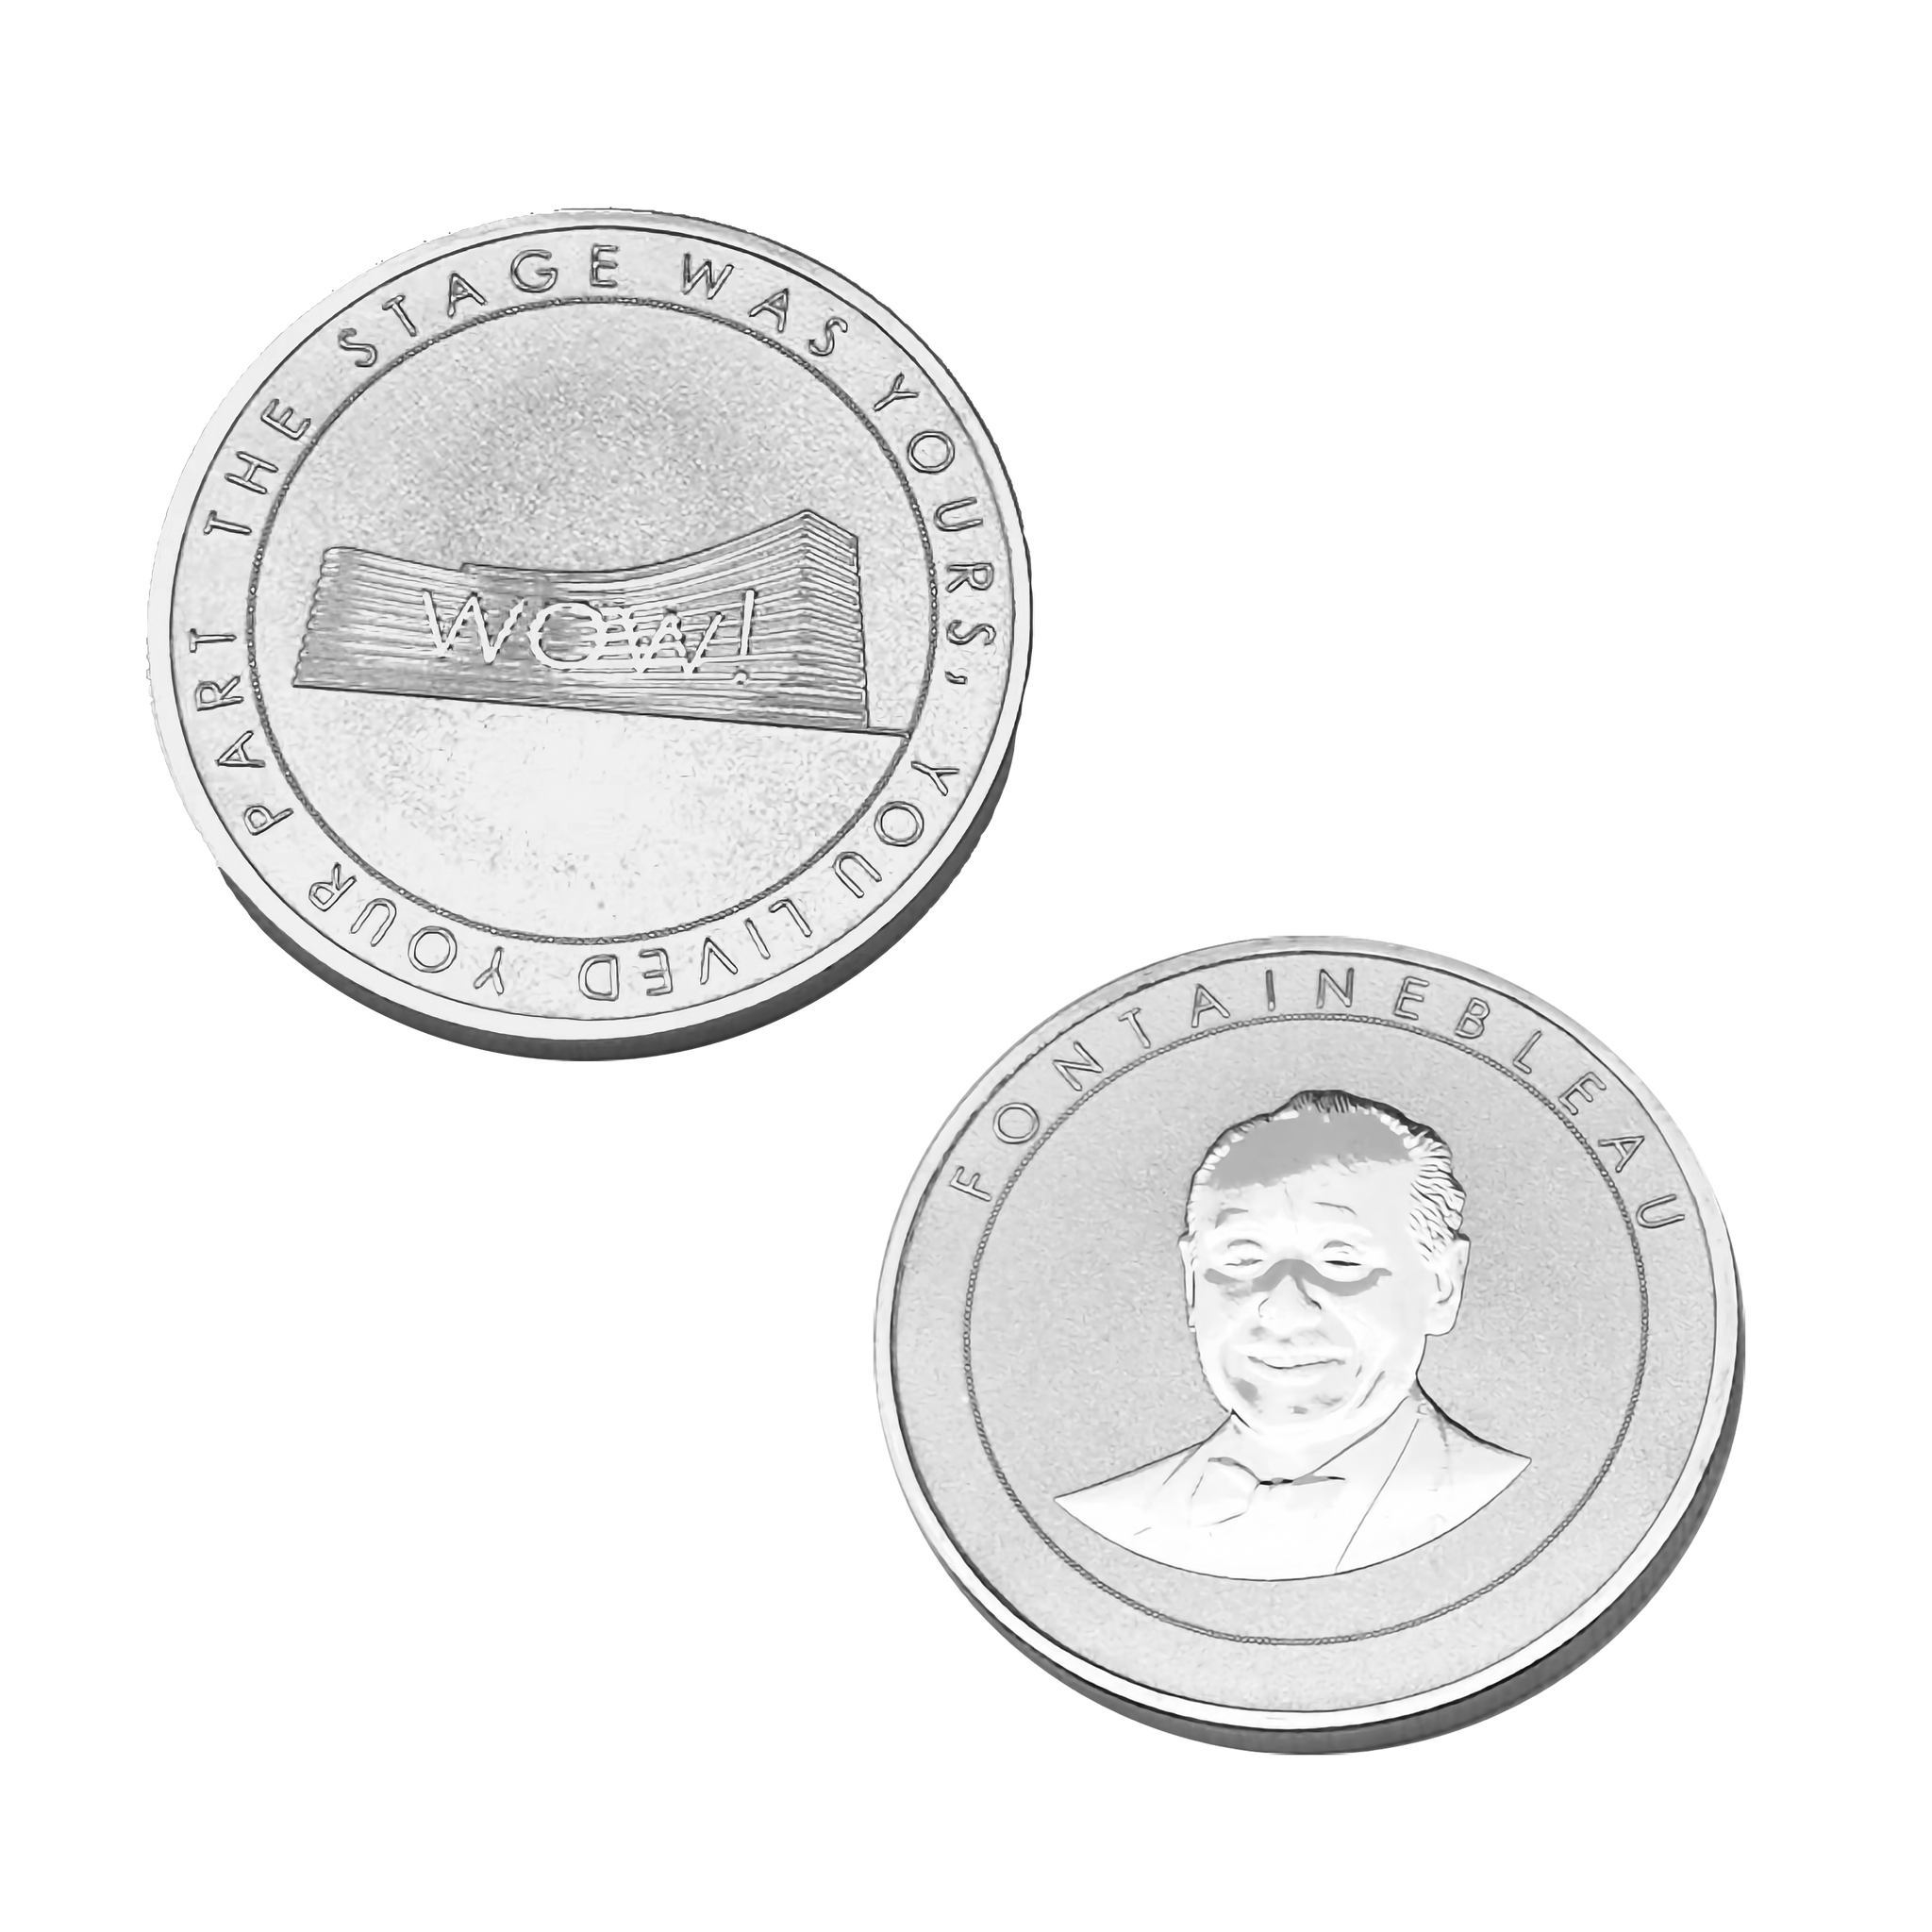 1.2" Double Sided Custom Coin